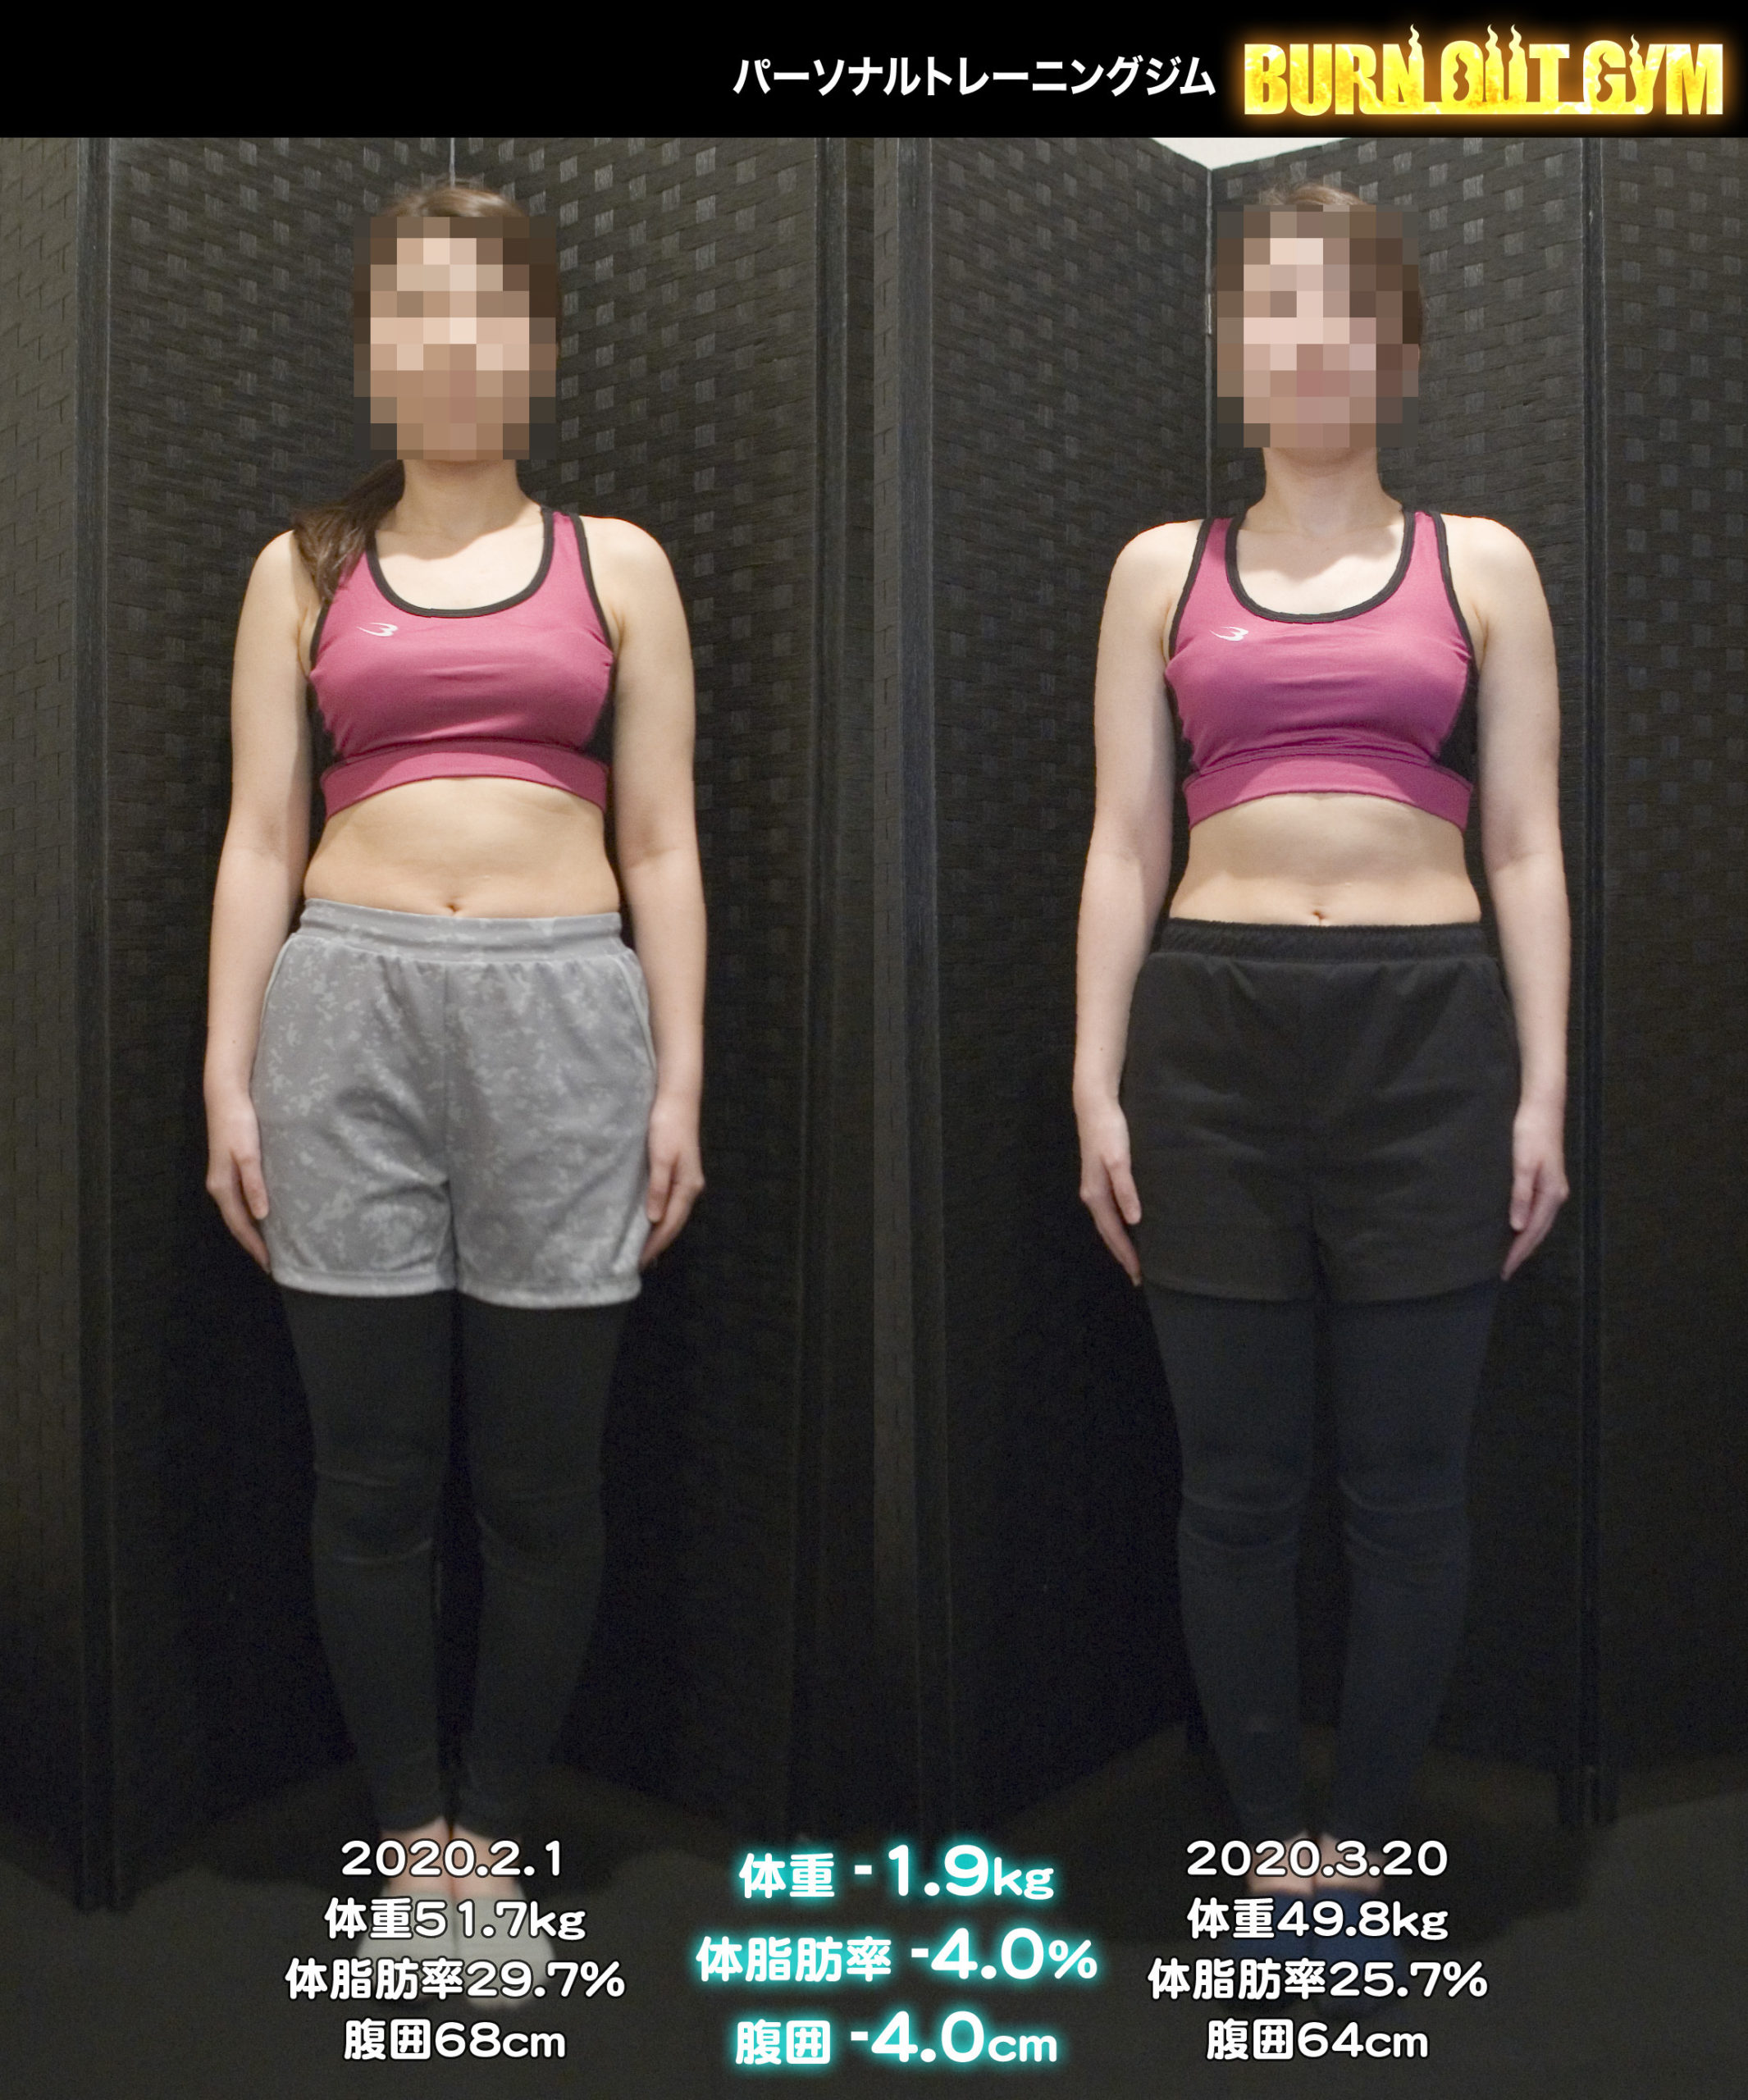 体験者 20代 女性 身長150cm台c・dさんのダイエット事例